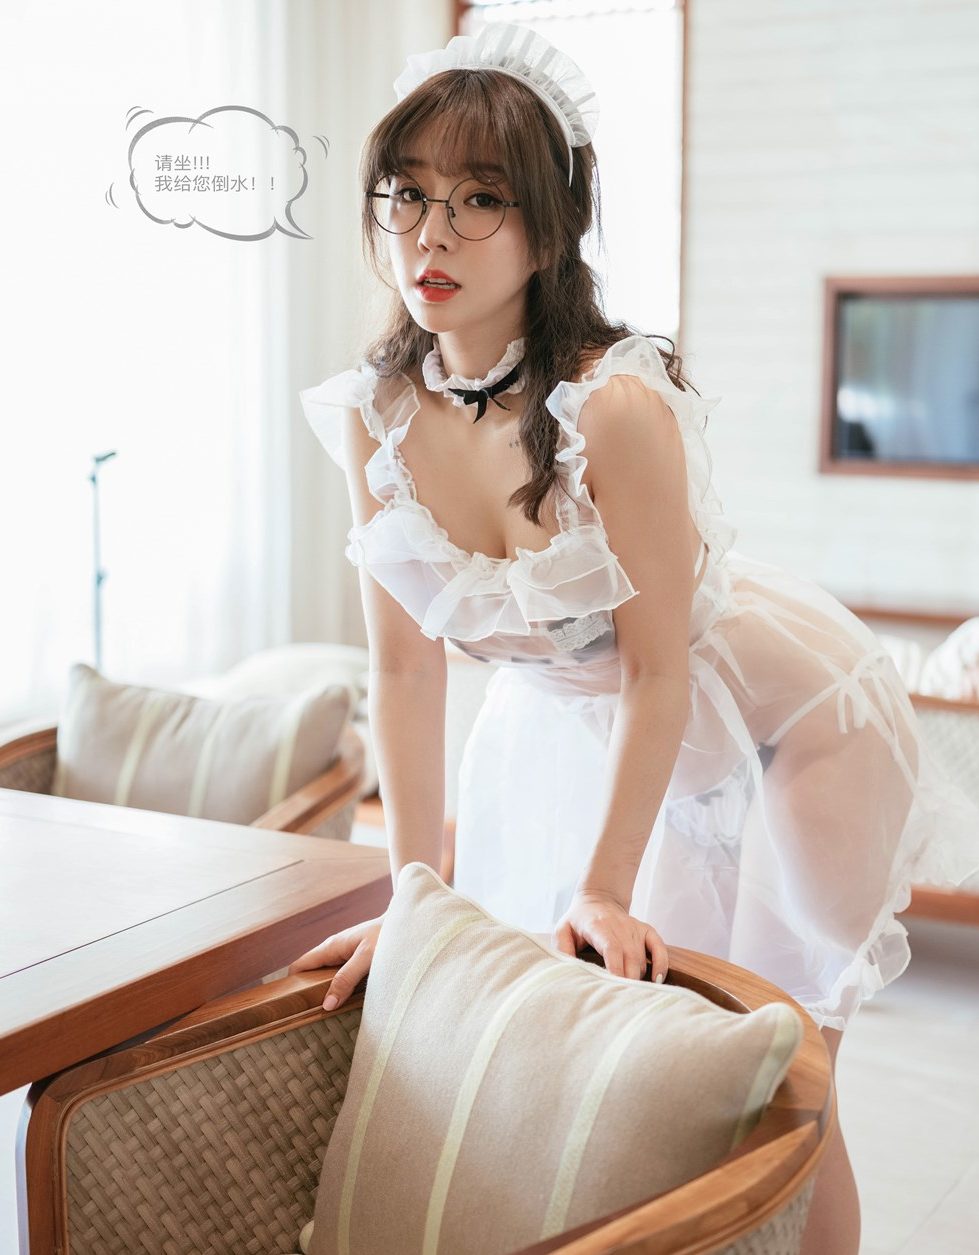 wang yu chun hot asian girl sexy hentai role playing sexy maid 